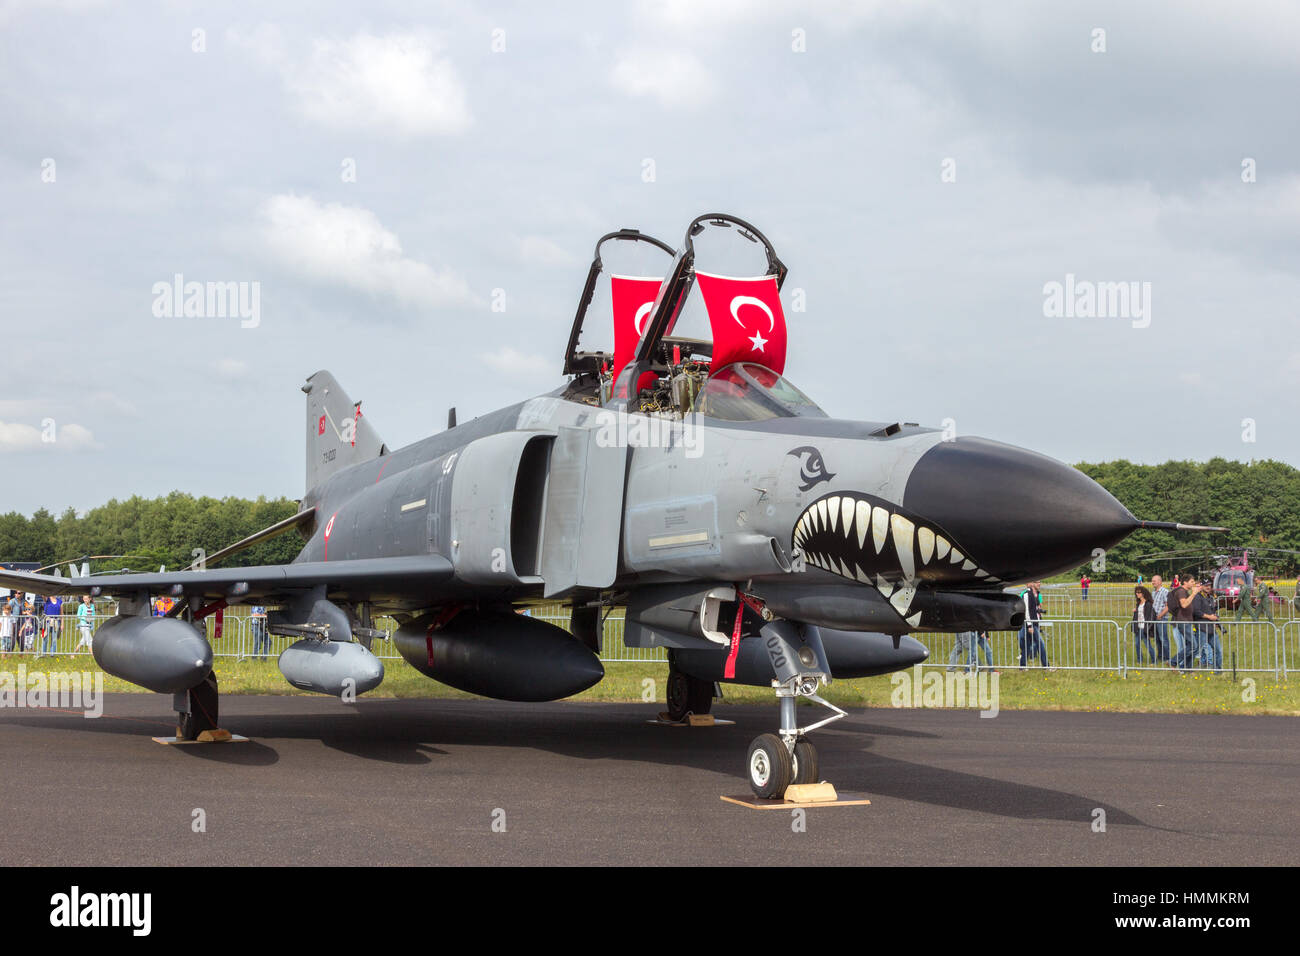 GILZE Rijen, Paesi Bassi - 21 giugno 2014: aviazione turca F-4 Phantom fighter jet in mostra statica al Dutch Air Force Open House. Foto Stock